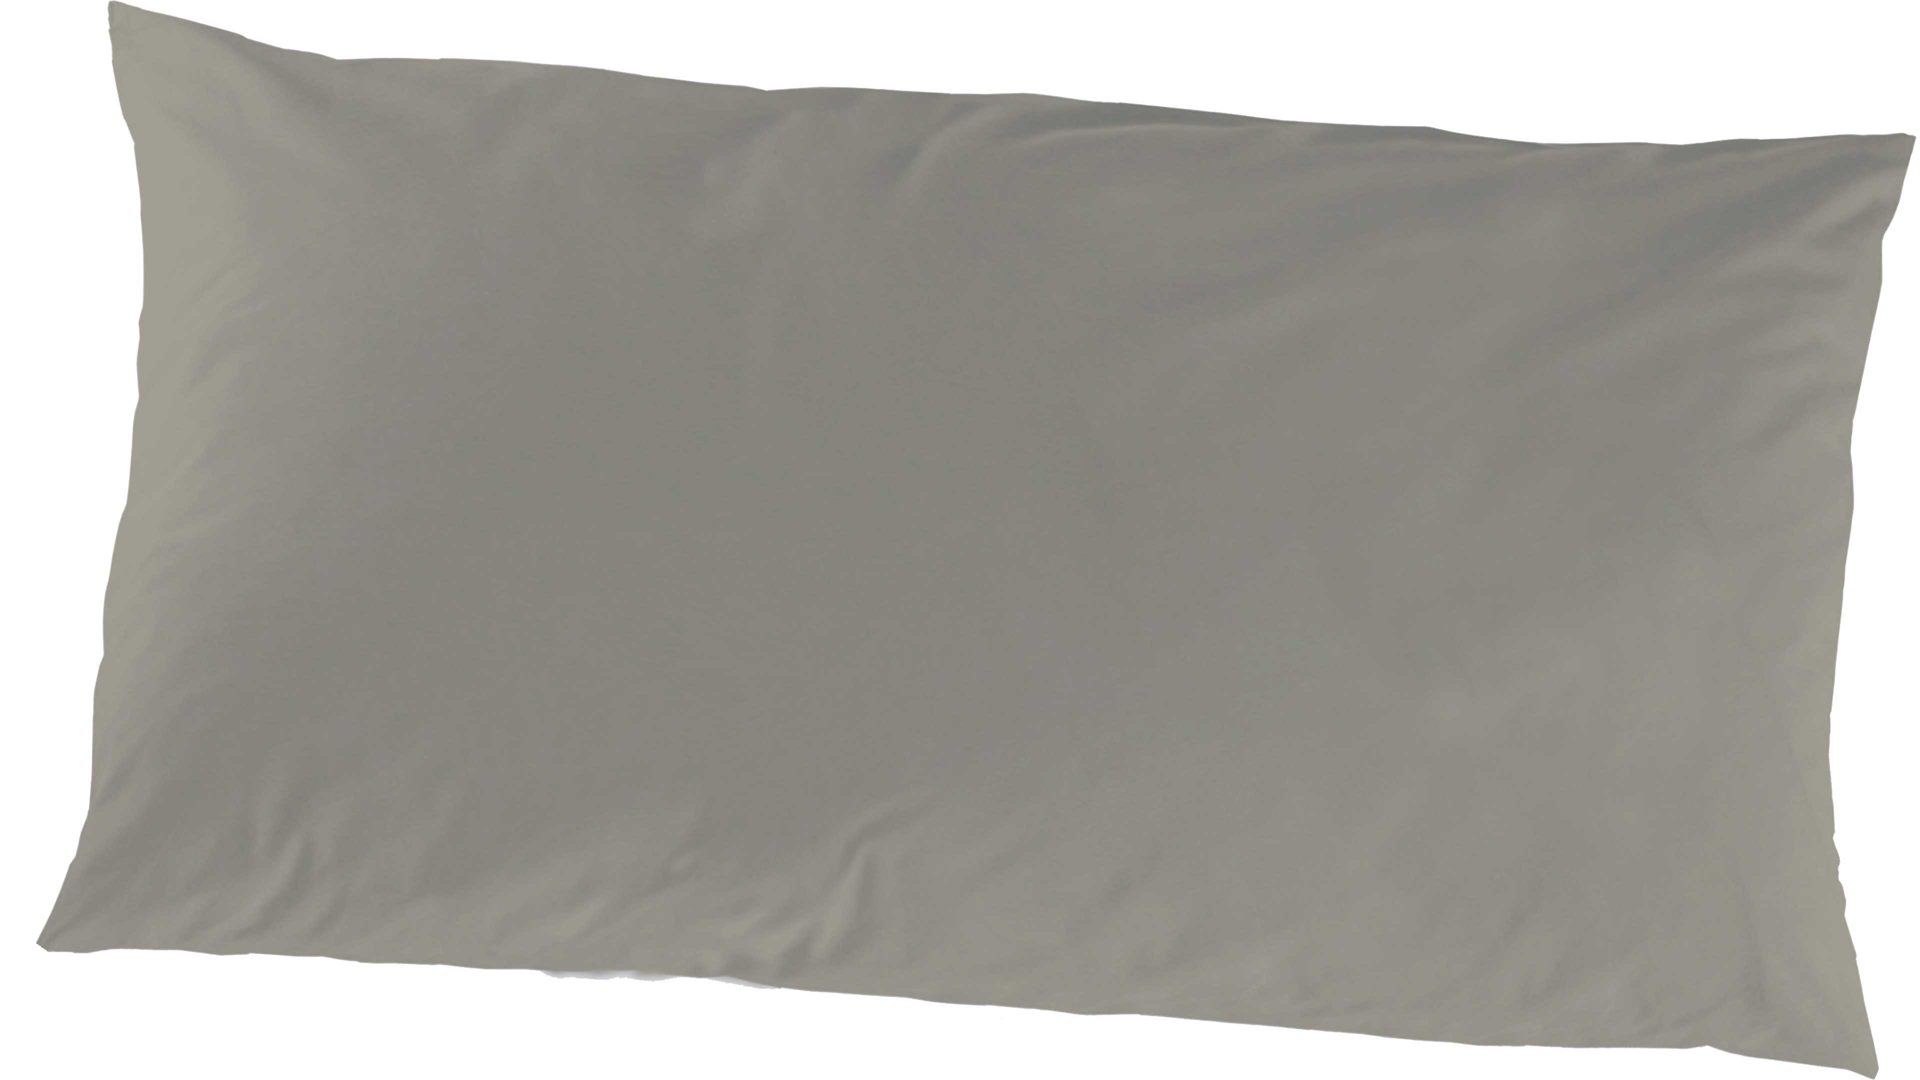 Kissenbezug /-hülle H.g. hahn haustextilien aus Stoff in Hellbraun HAHN Luxus-Satin-Kopfkissenbezug Sempre taupefarbener Baumwollsatin – ca. 40 x 80 cm